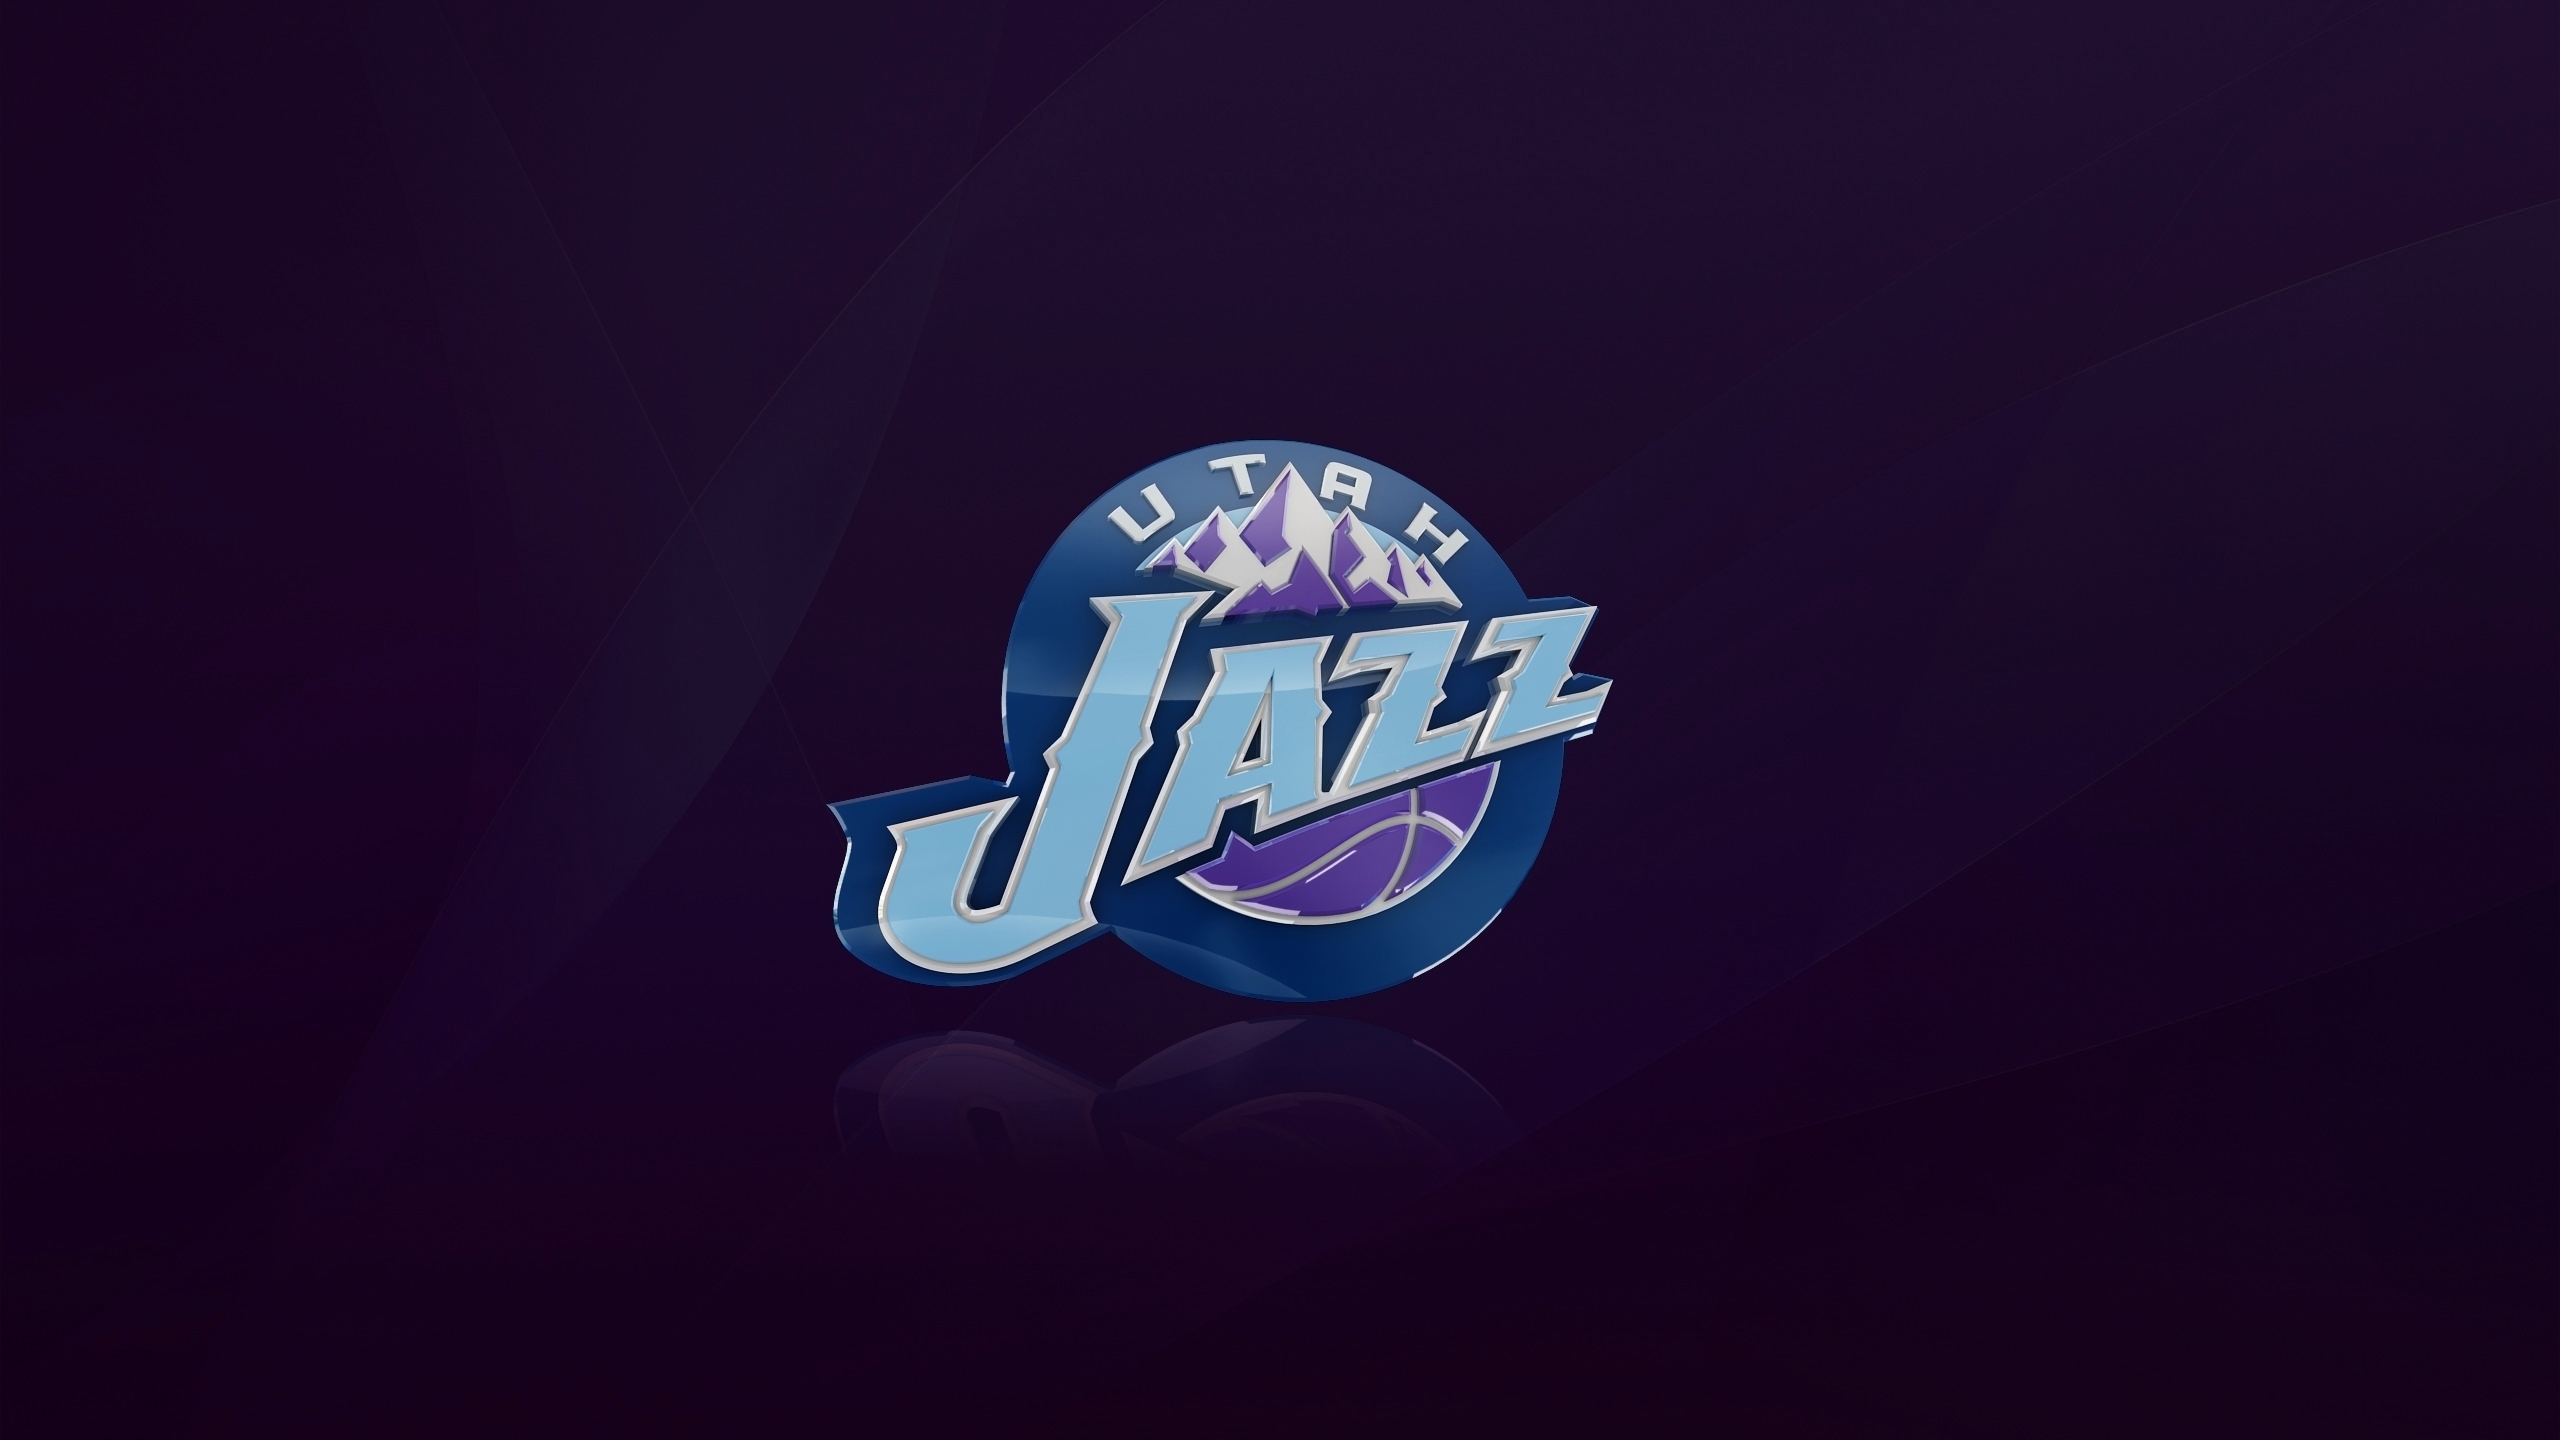 Utah Jazz Logo for 2560x1440 HDTV resolution